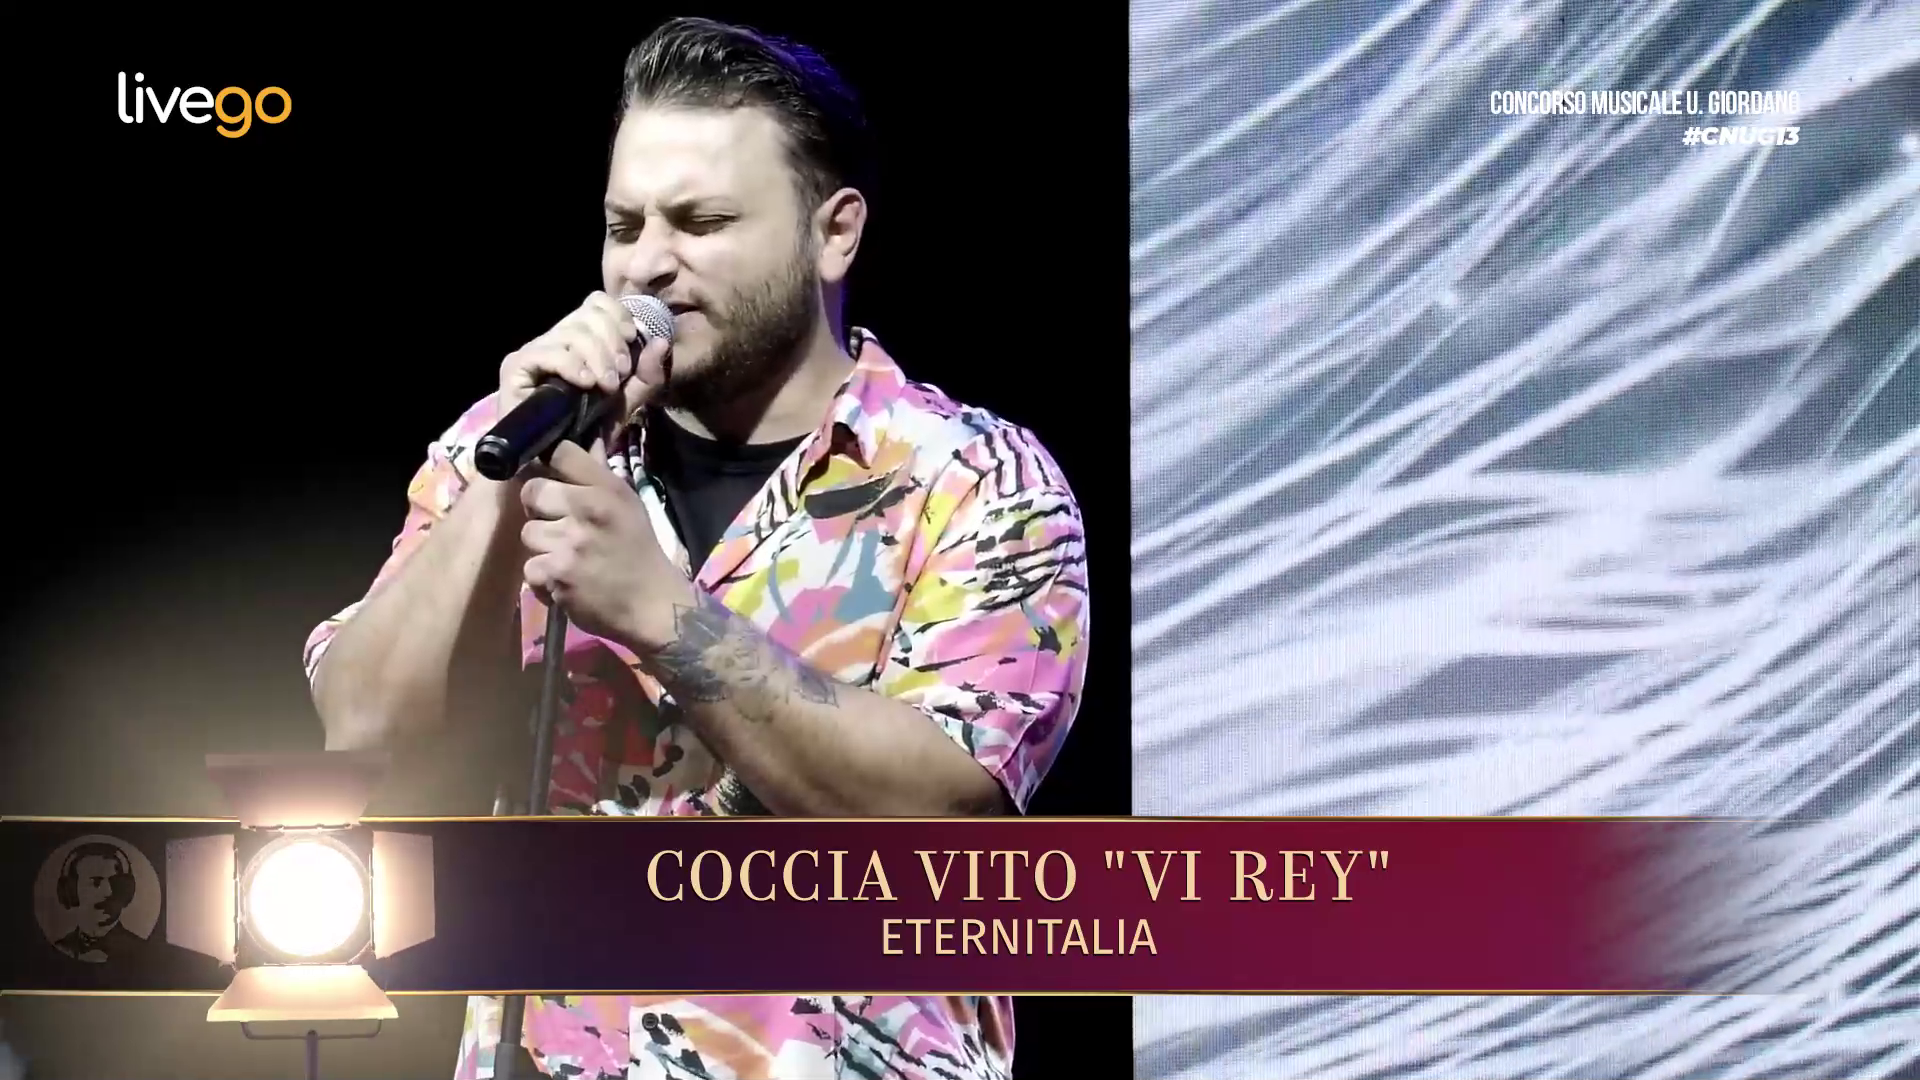 31 - COCCIA VITO "VI REY" - ETERNITALIA